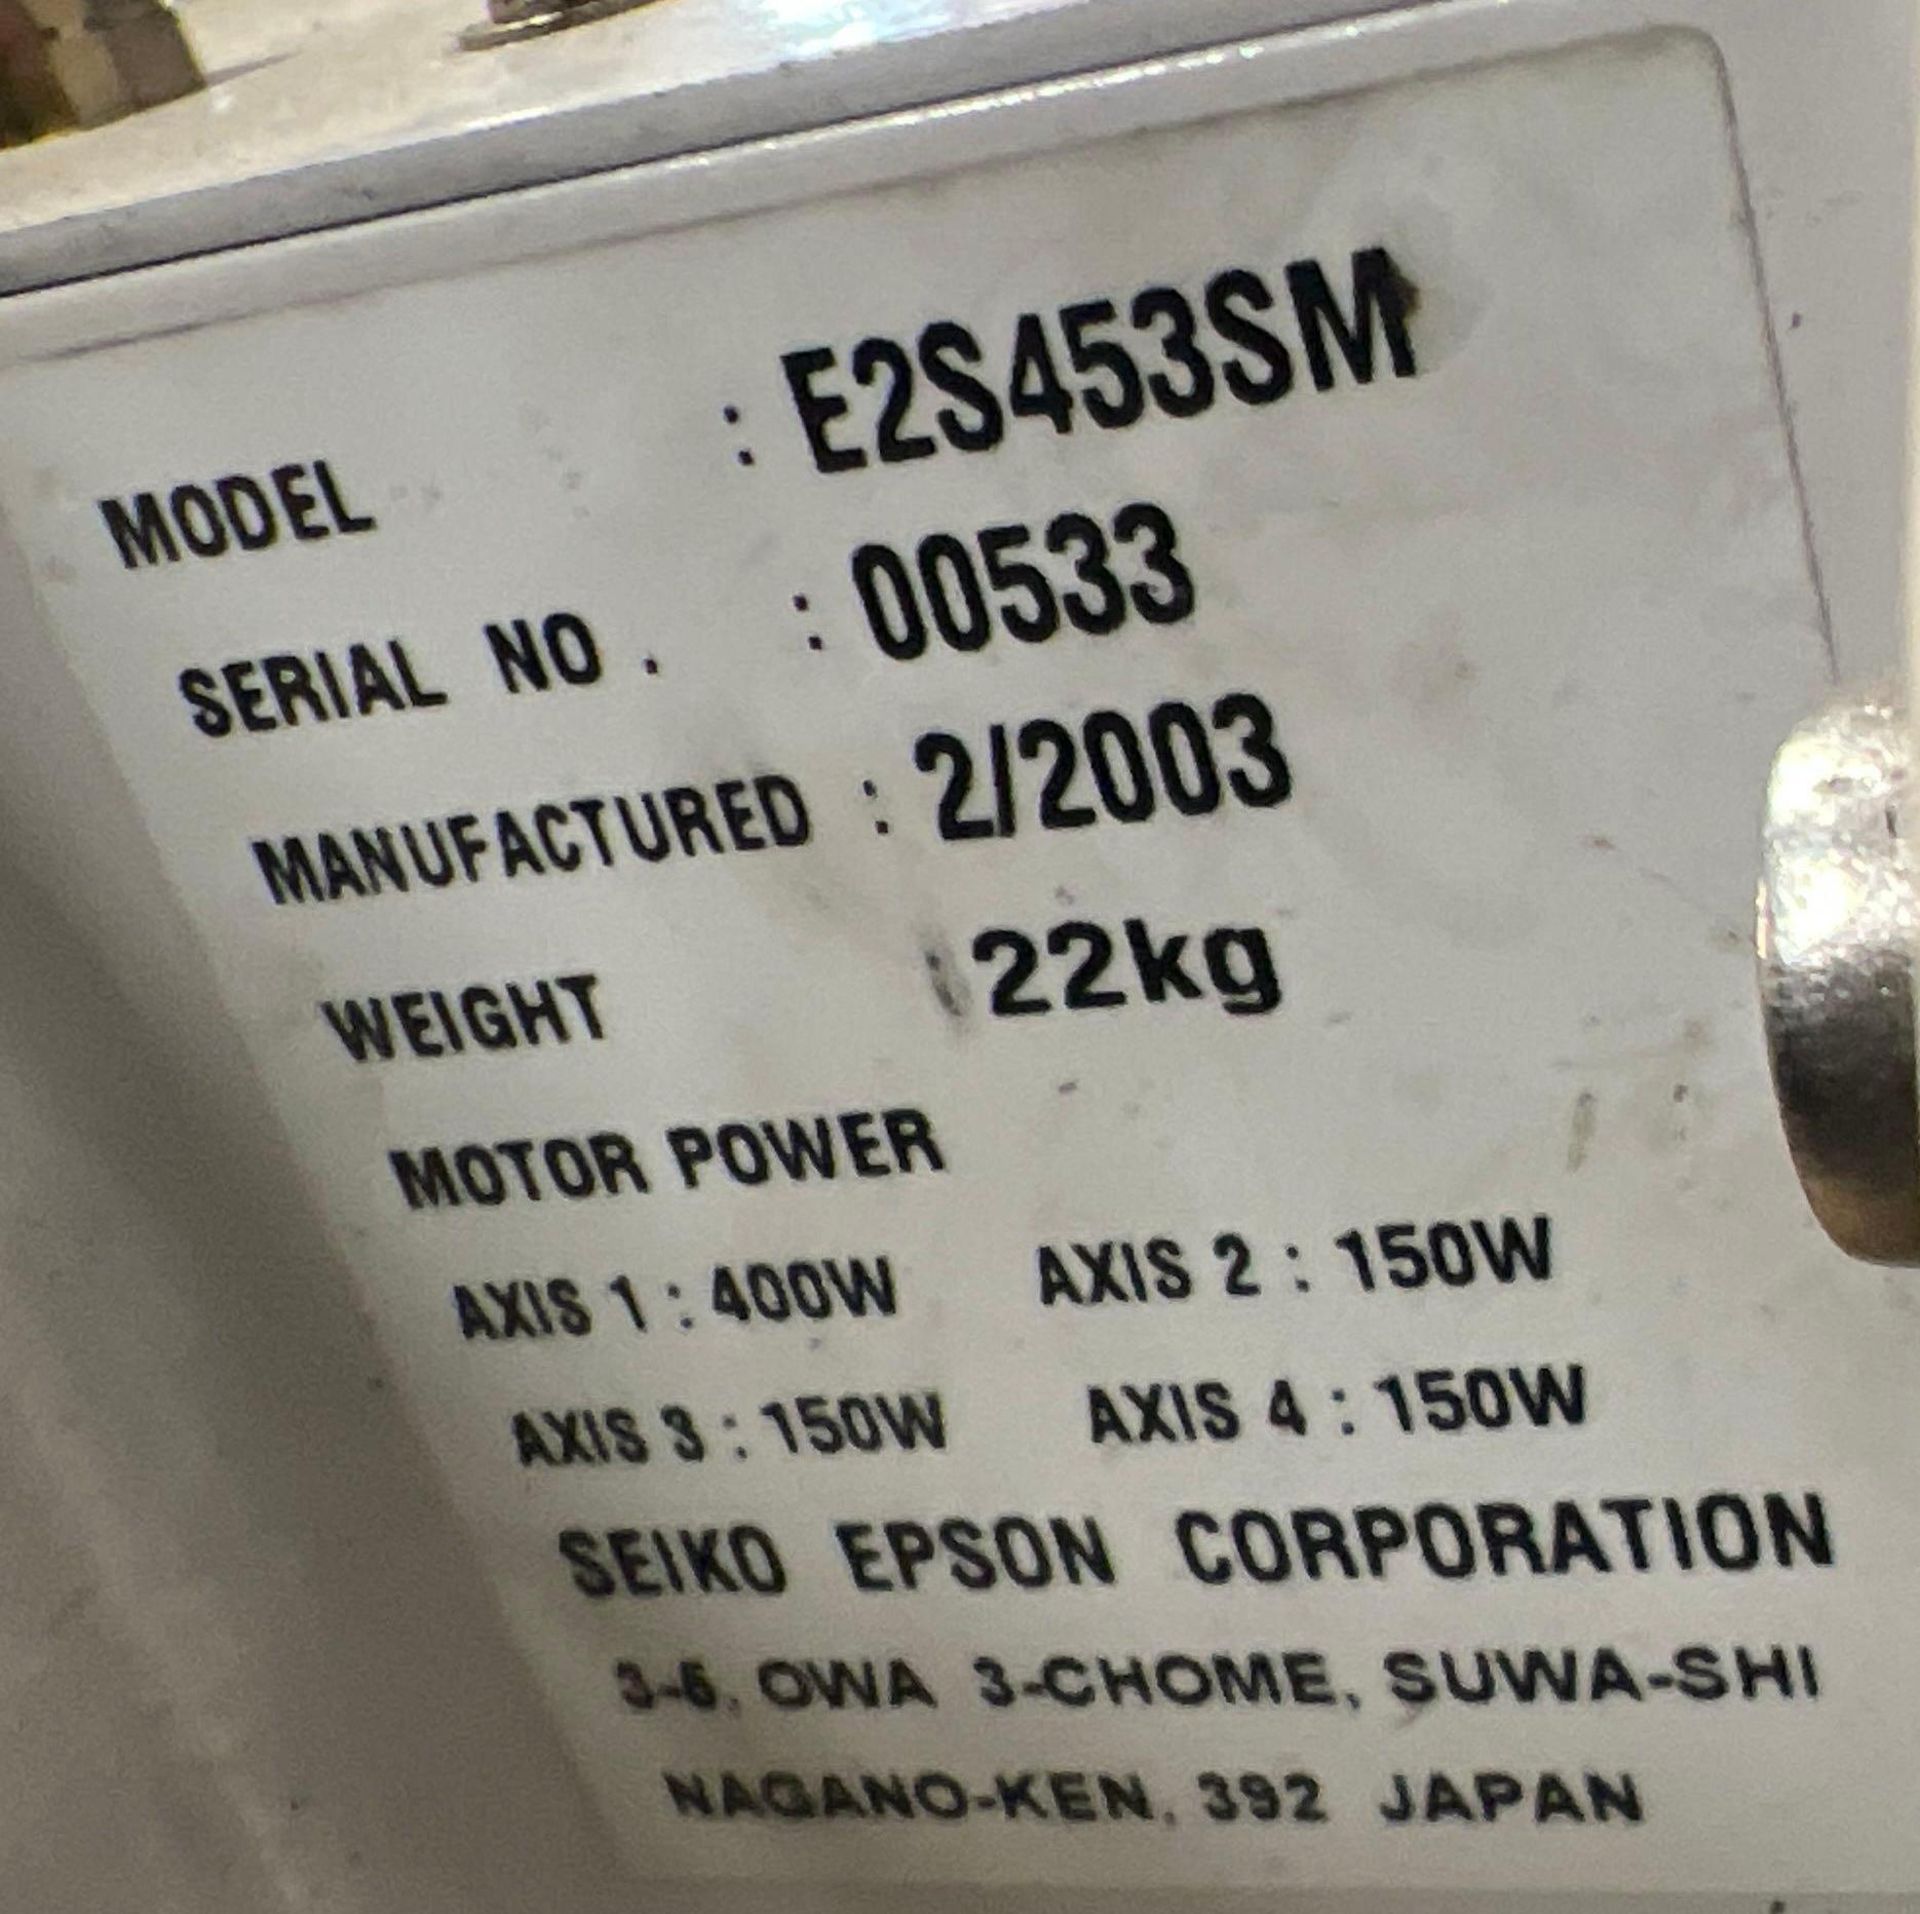 Epson E2S453SM 4-Axis Robot w/Controller - Image 4 of 5